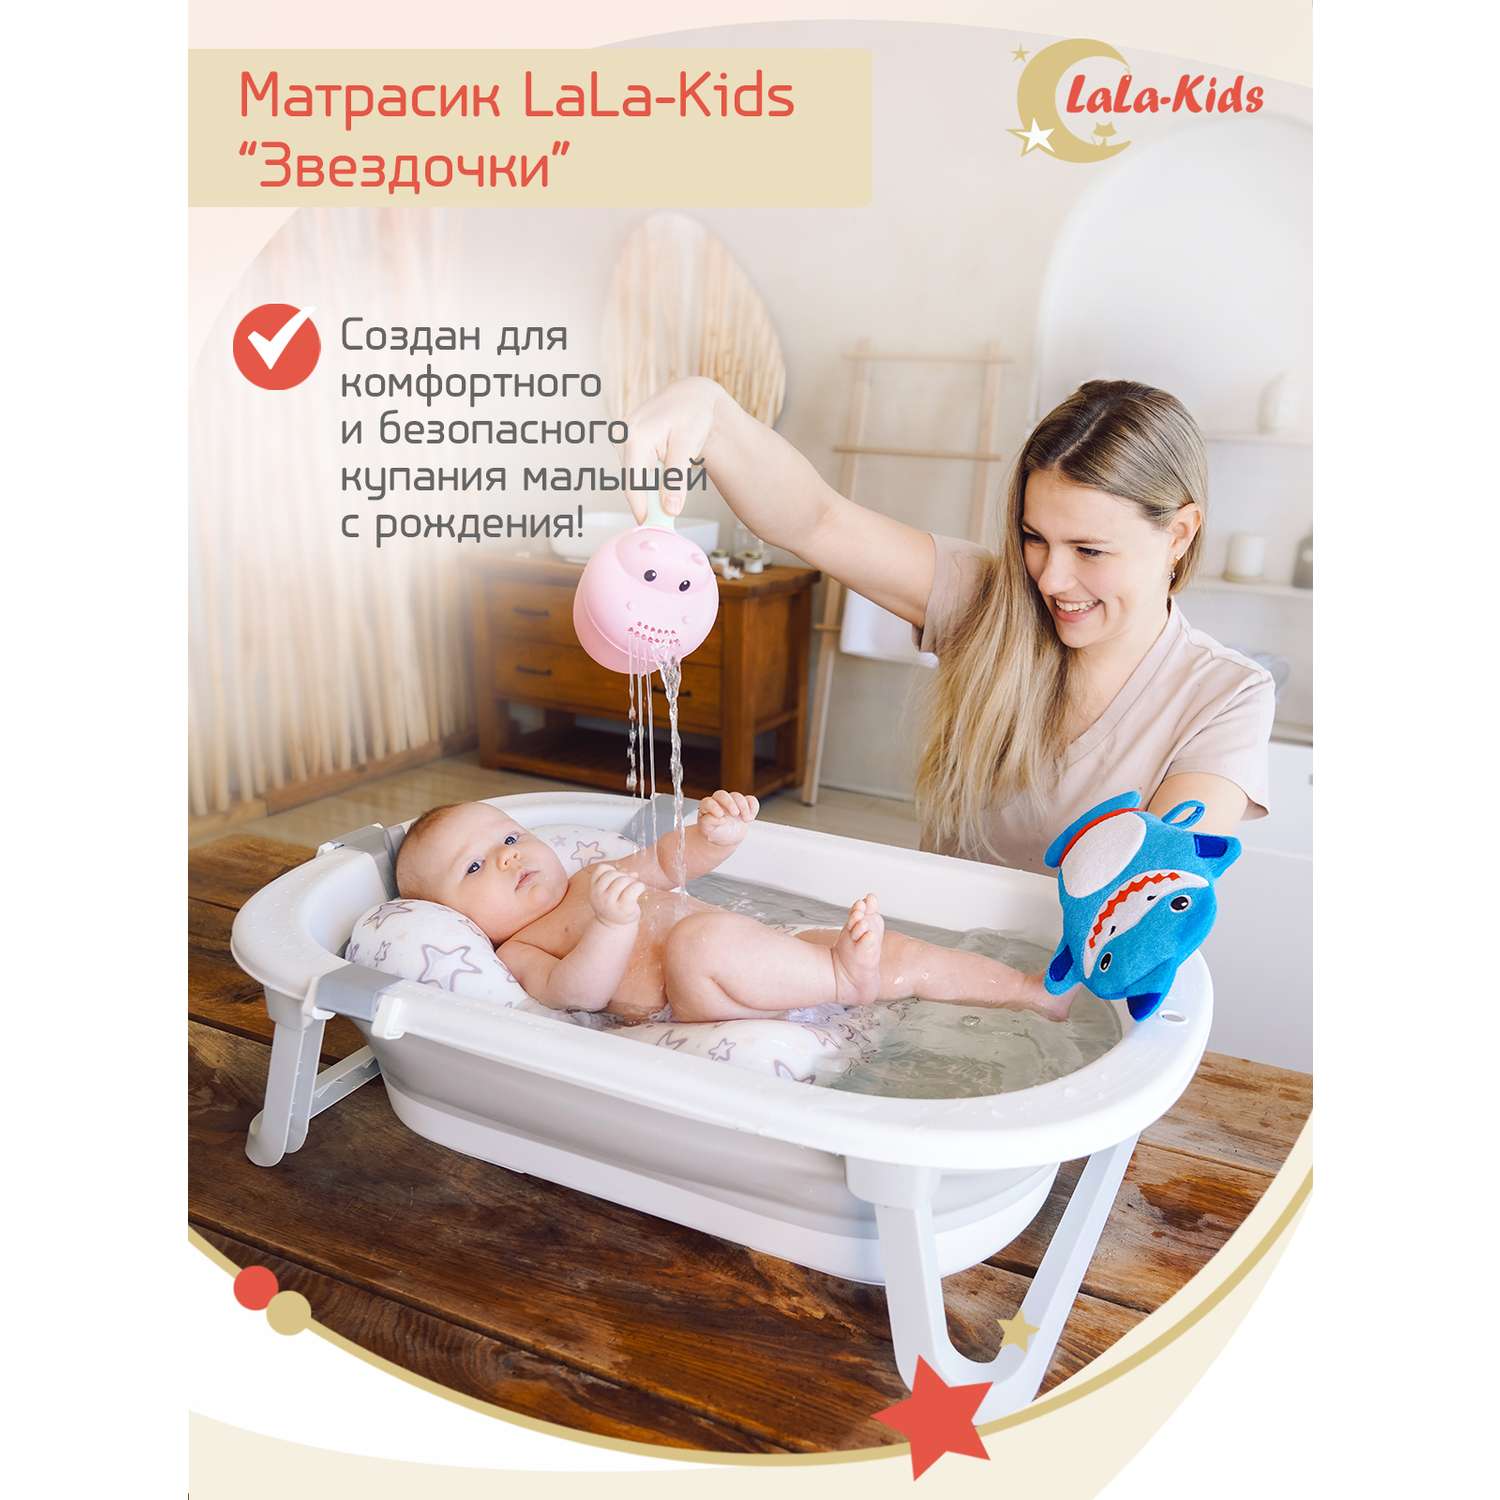 Ванночка складная LaLa-Kids для купания новорожденных с матрасиком в комплекте - фото 2